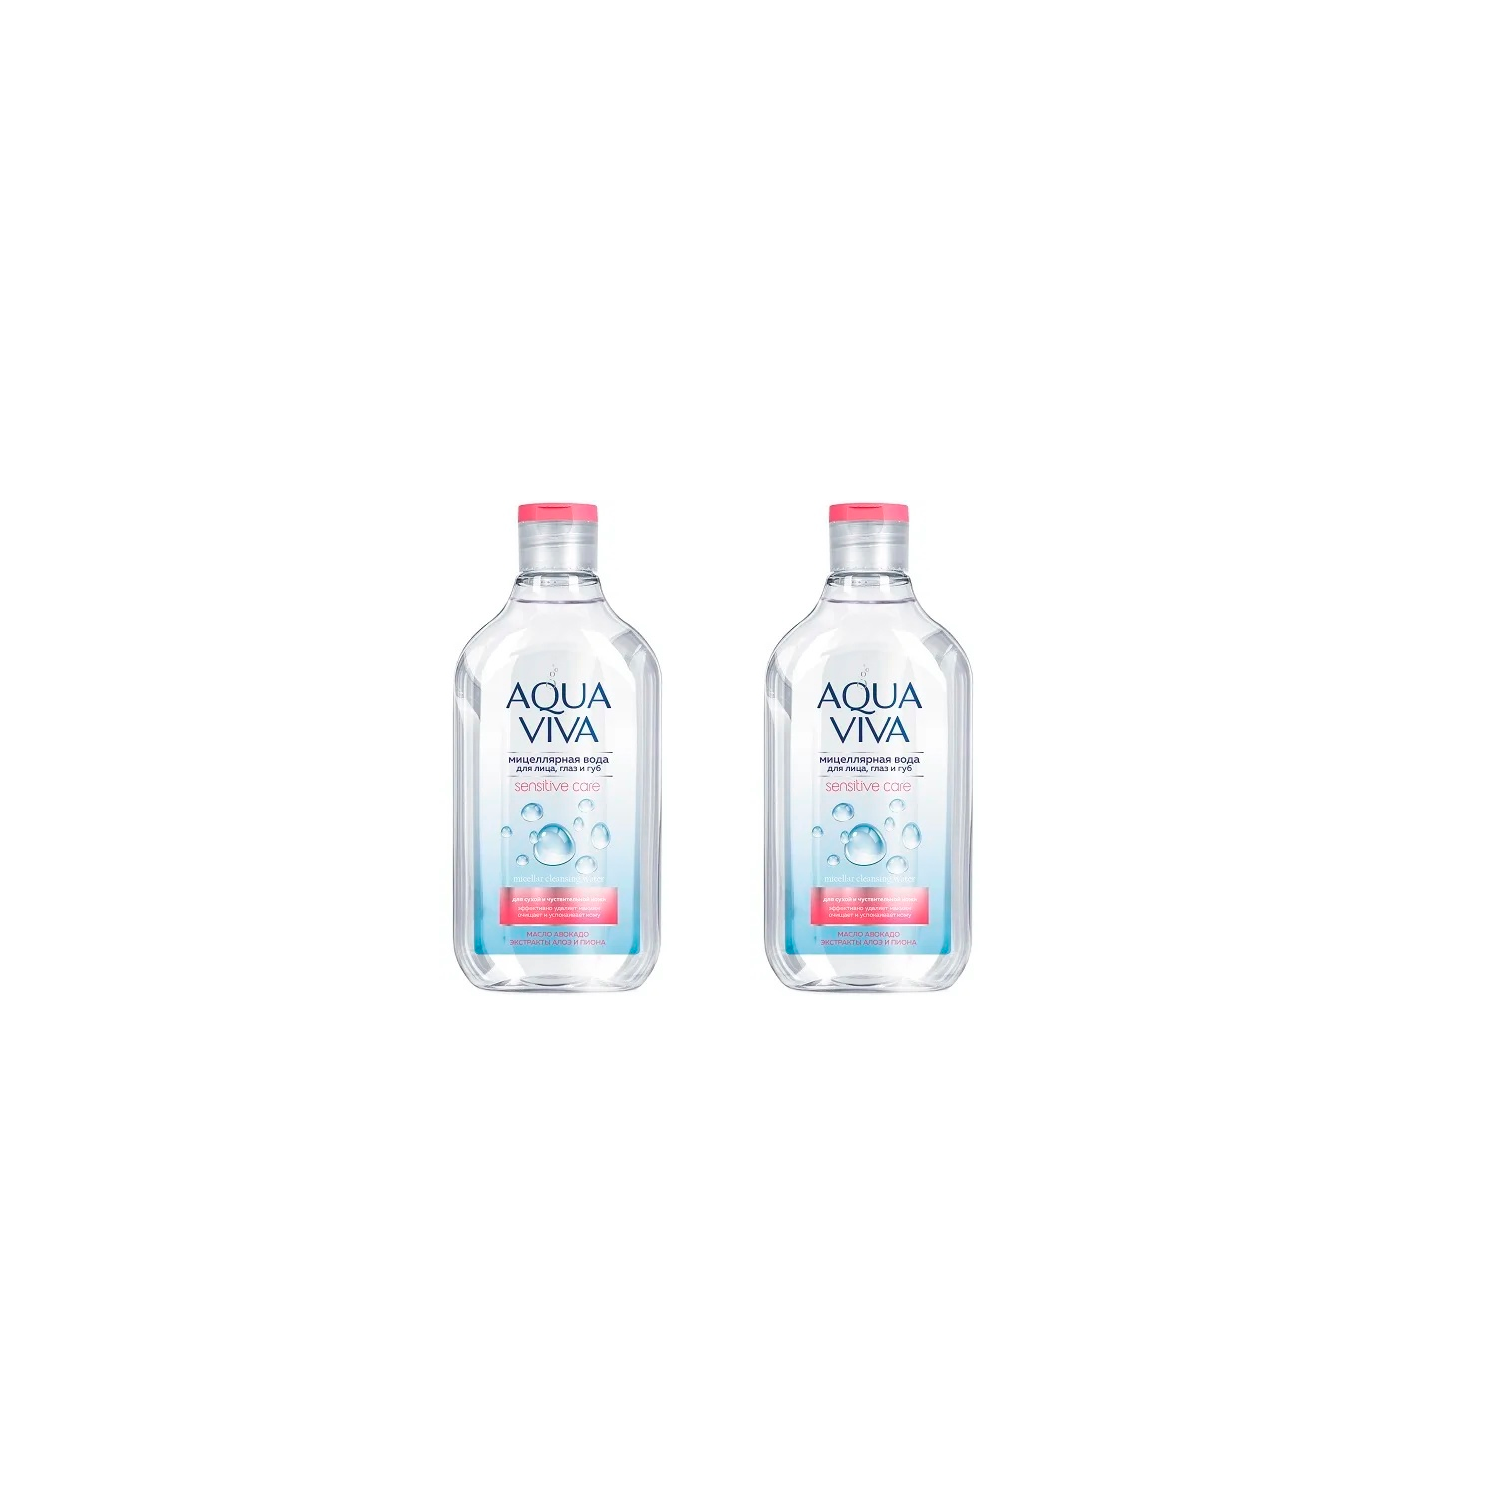 Мицеллярная вода Romax для сухой и чувствительной кожи Aqua Viva, 300 мл х 2 шт.